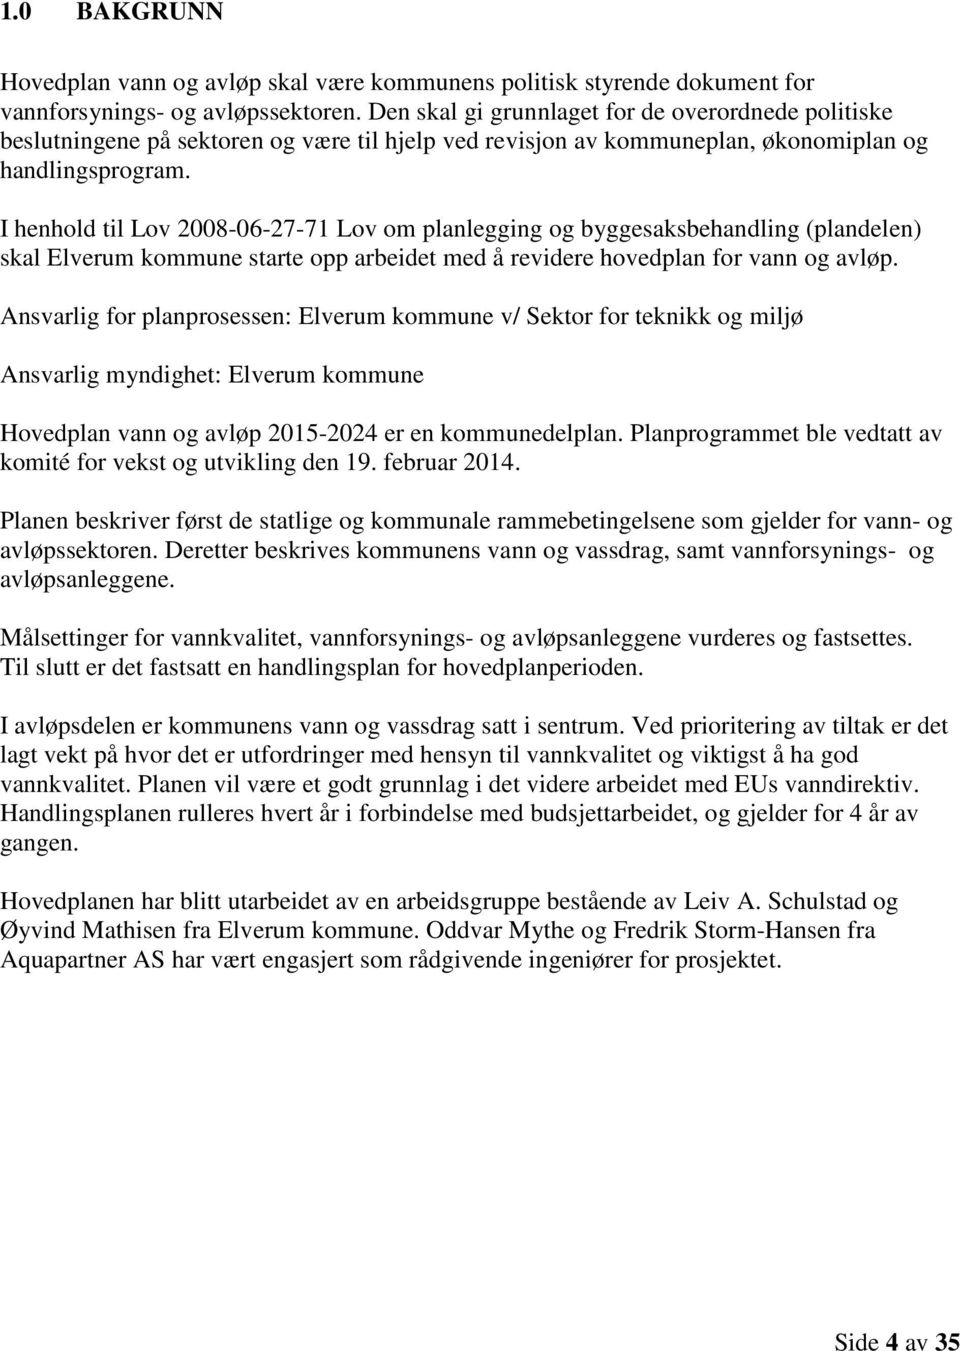 I henhold til Lov 2008-06-27-71 Lov om planlegging og byggesaksbehandling (plandelen) skal Elverum kommune starte opp arbeidet med å revidere hovedplan for vann og avløp.